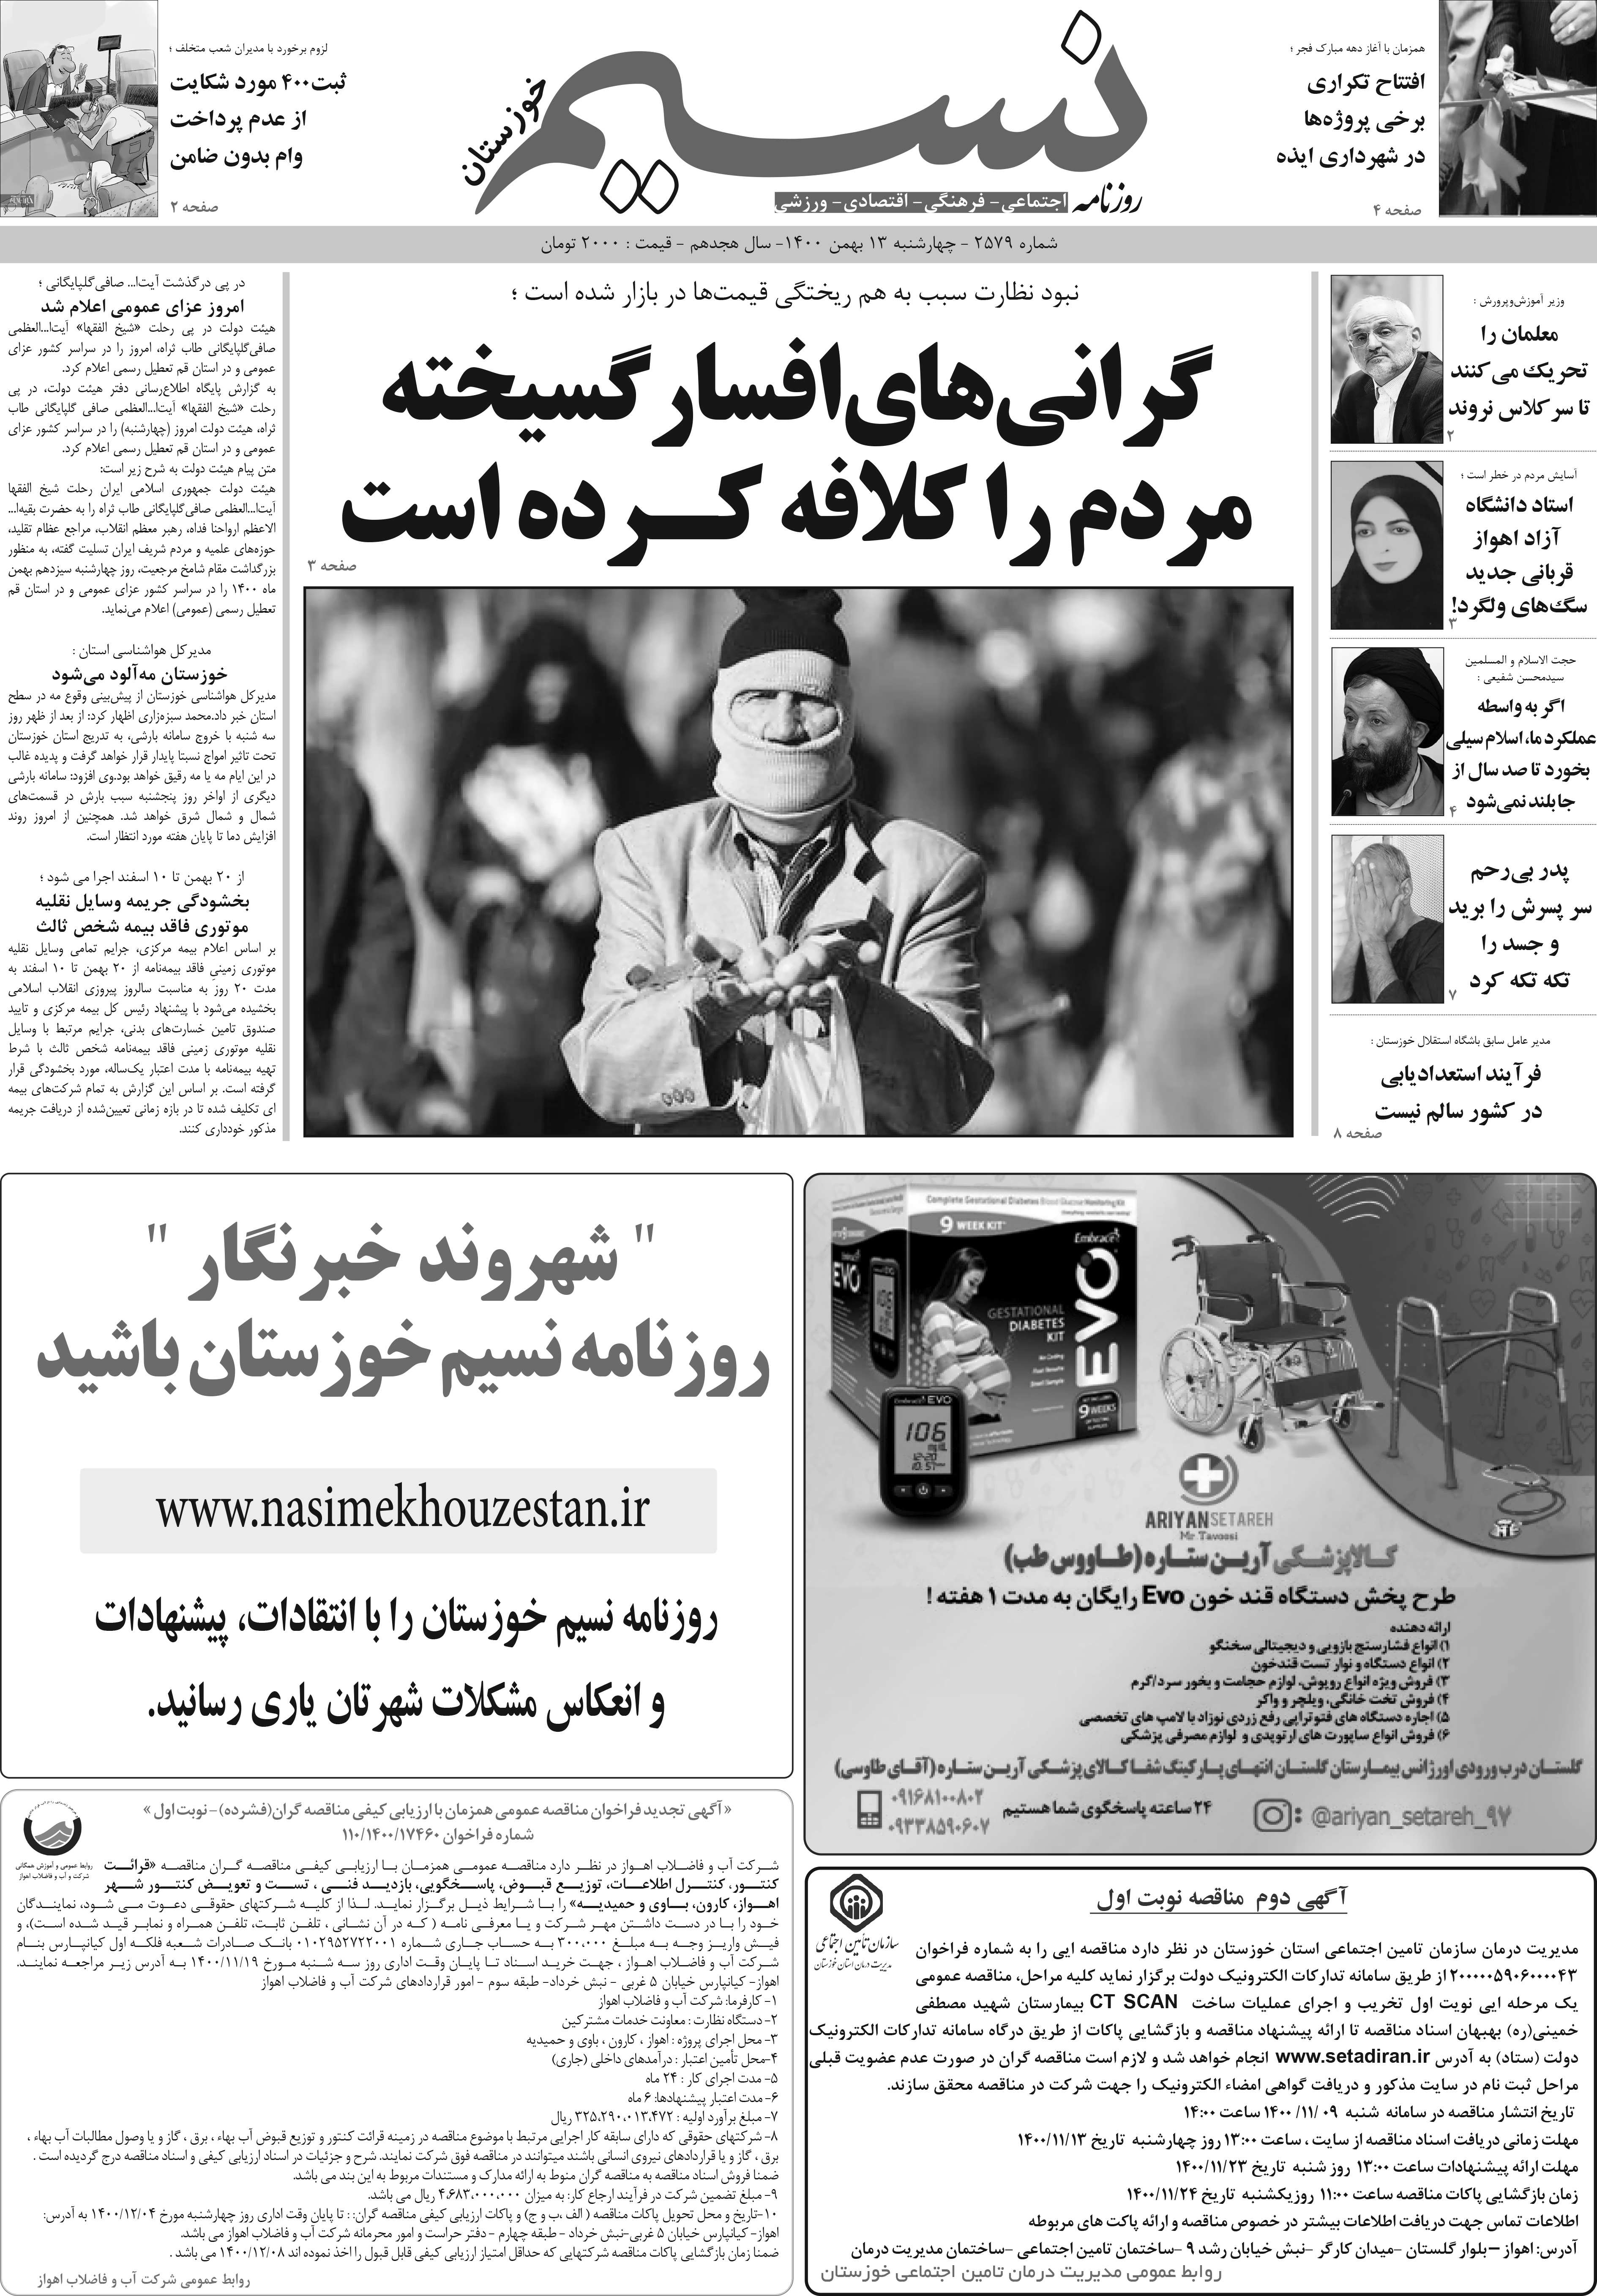 صفحه اصلی روزنامه نسیم شماره 2579 